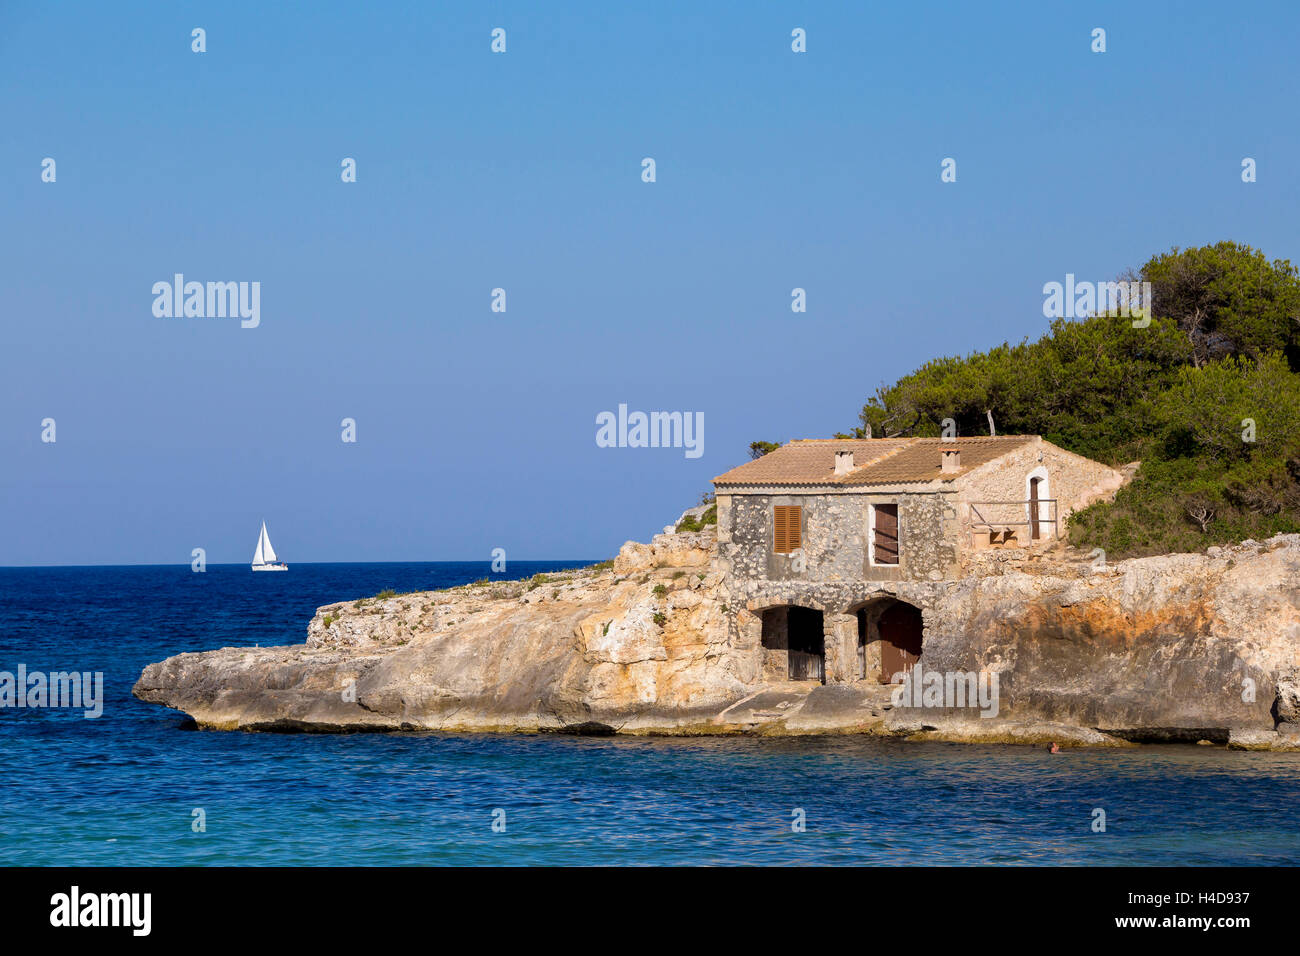 Casa di pietra sulla costa, Cala Mondrago, costa orientale dell'isola di Maiorca, isole Baleari, Spagna, Europa Foto Stock